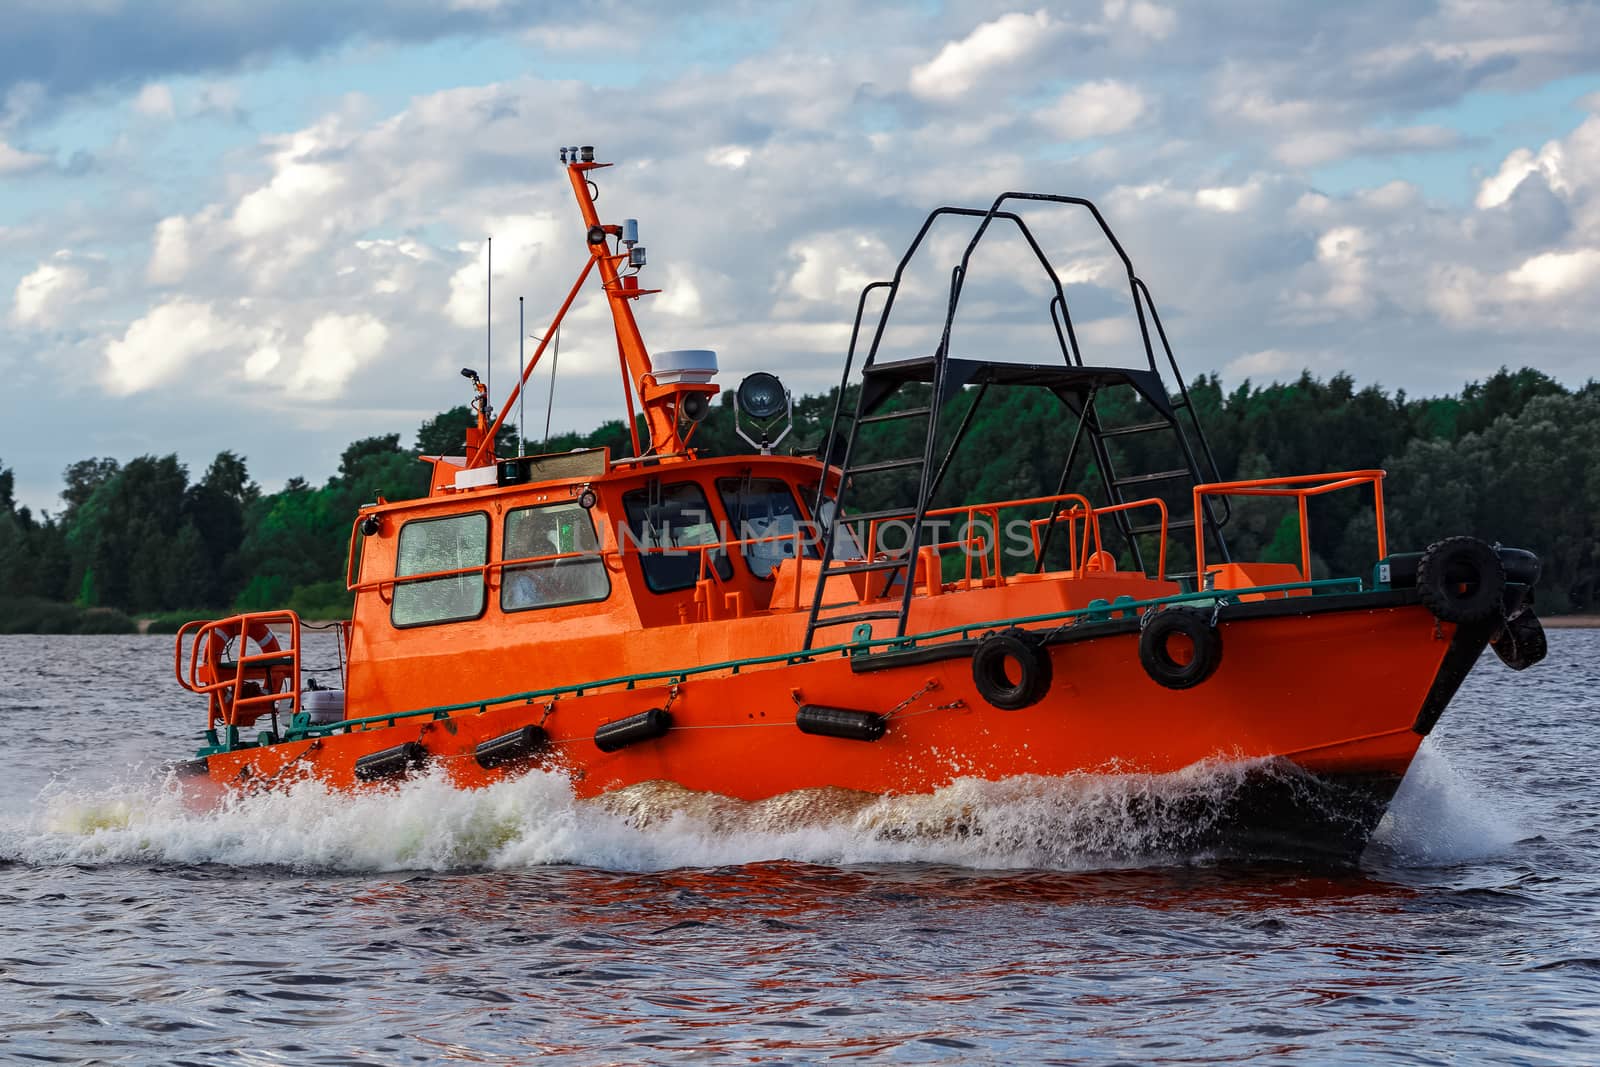 Orange pilot boat in action by sengnsp